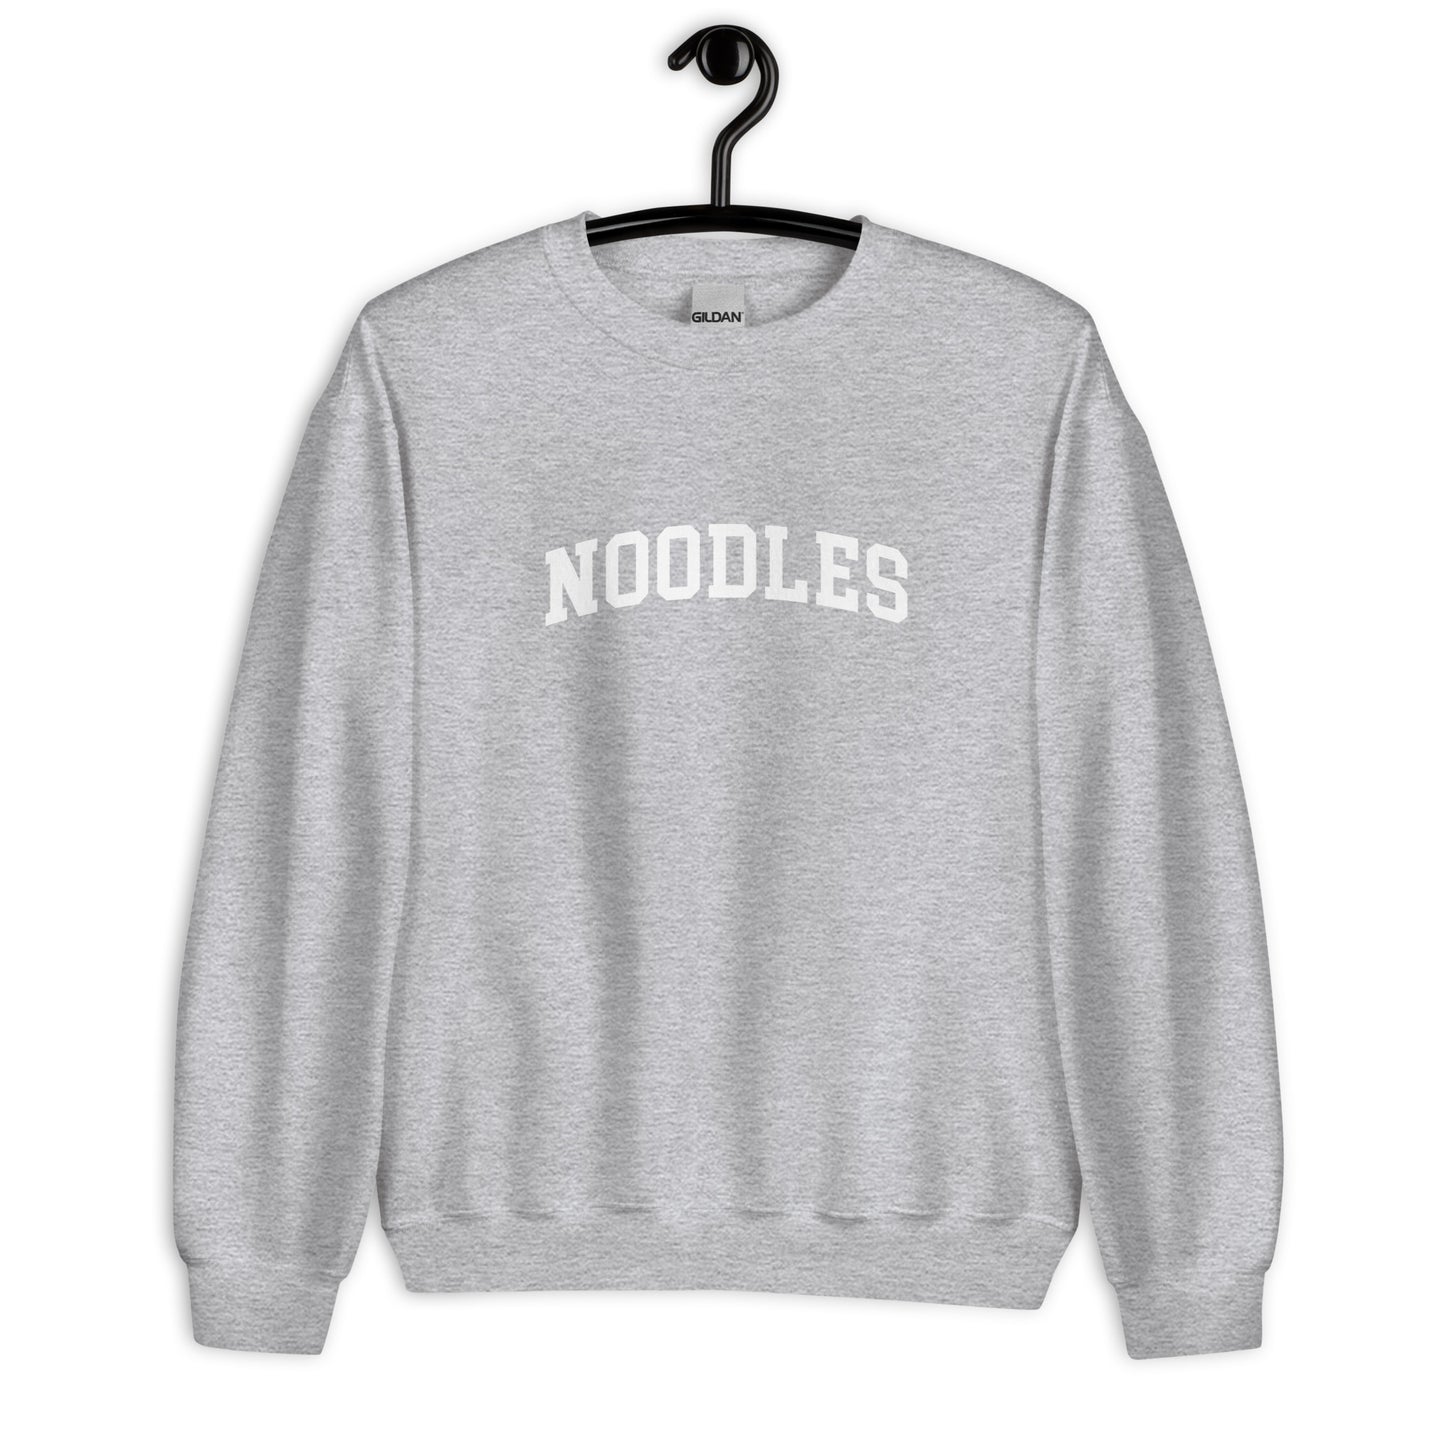 Noodles Sweatshirt - Arched Font